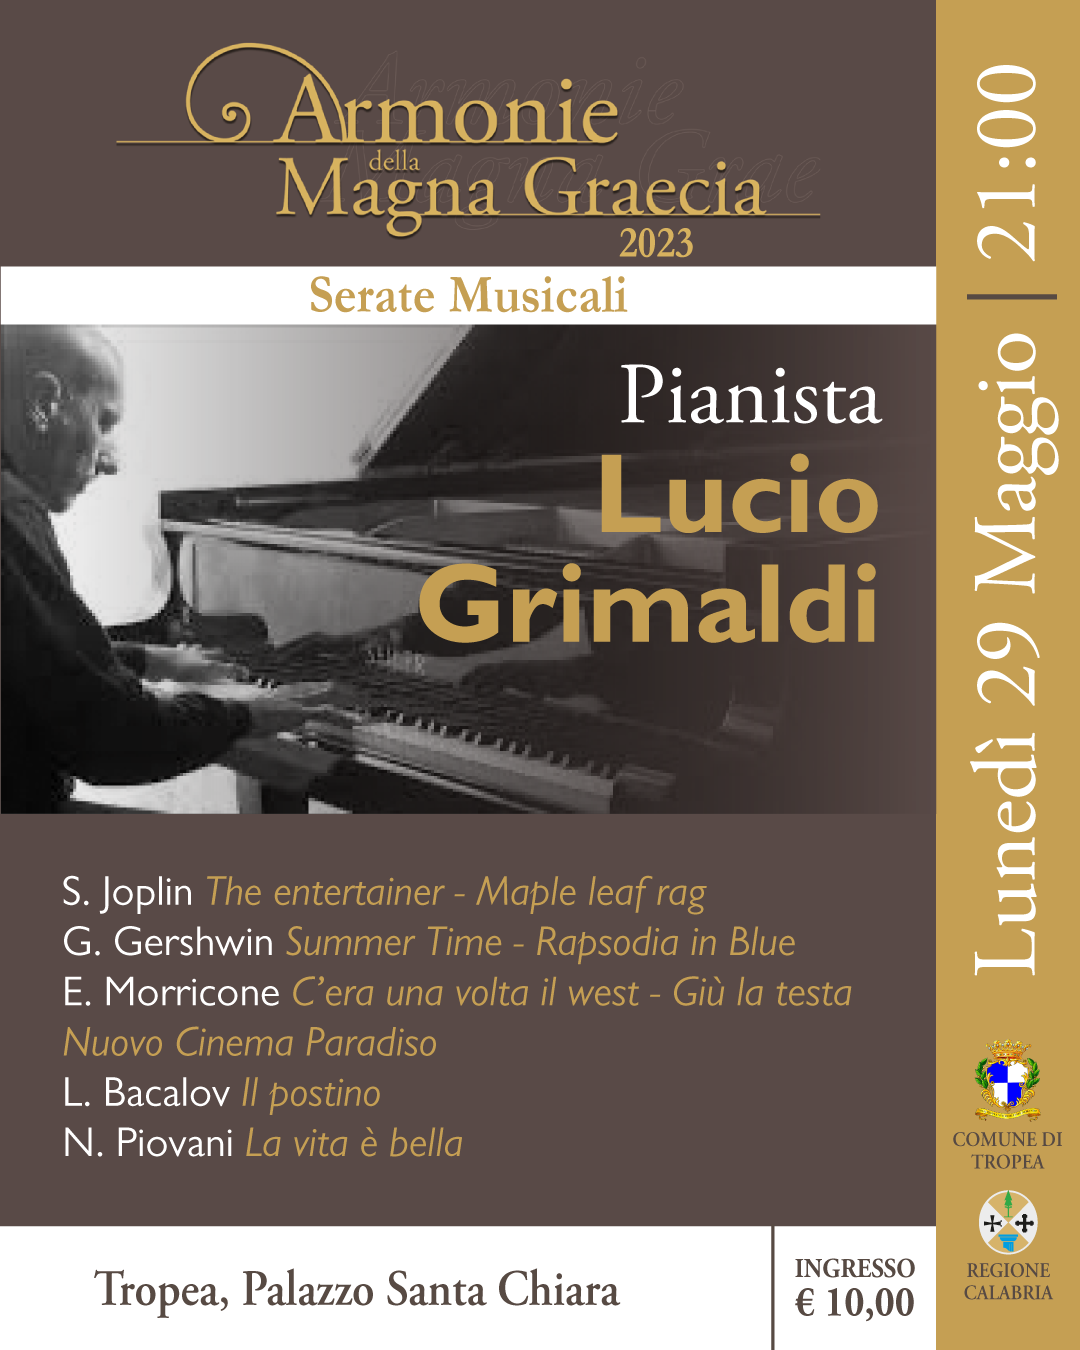 PianistaLucio Grimaldi